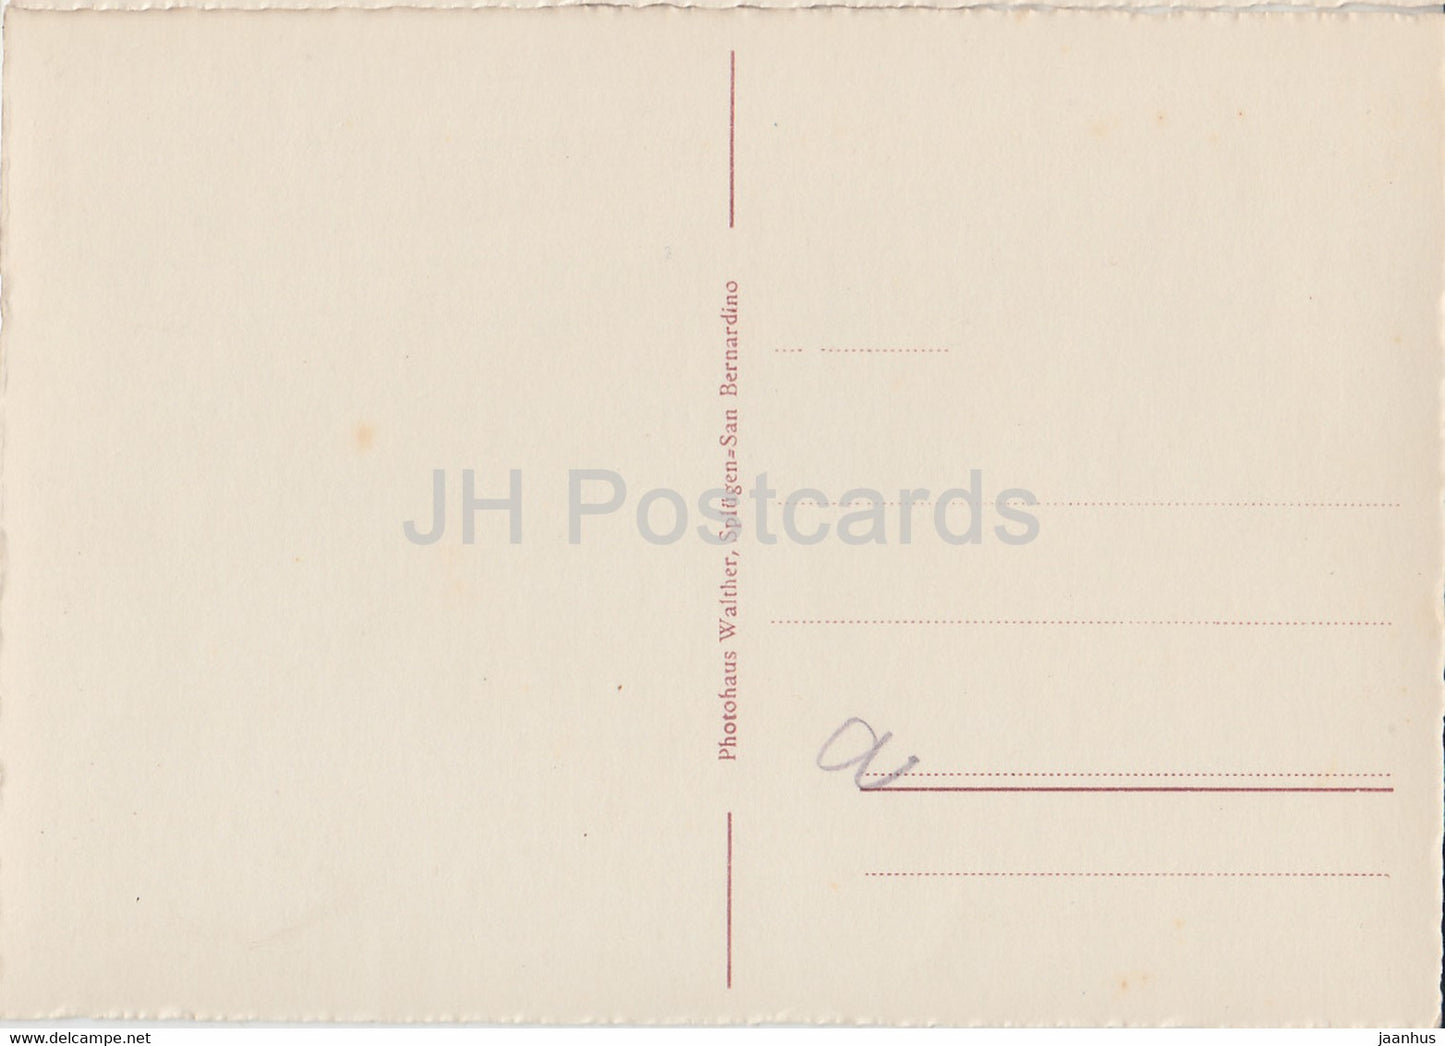 Nufenen mit Rheinwald u Zapporthorn - 601 - carte postale ancienne - Suisse - inutilisée